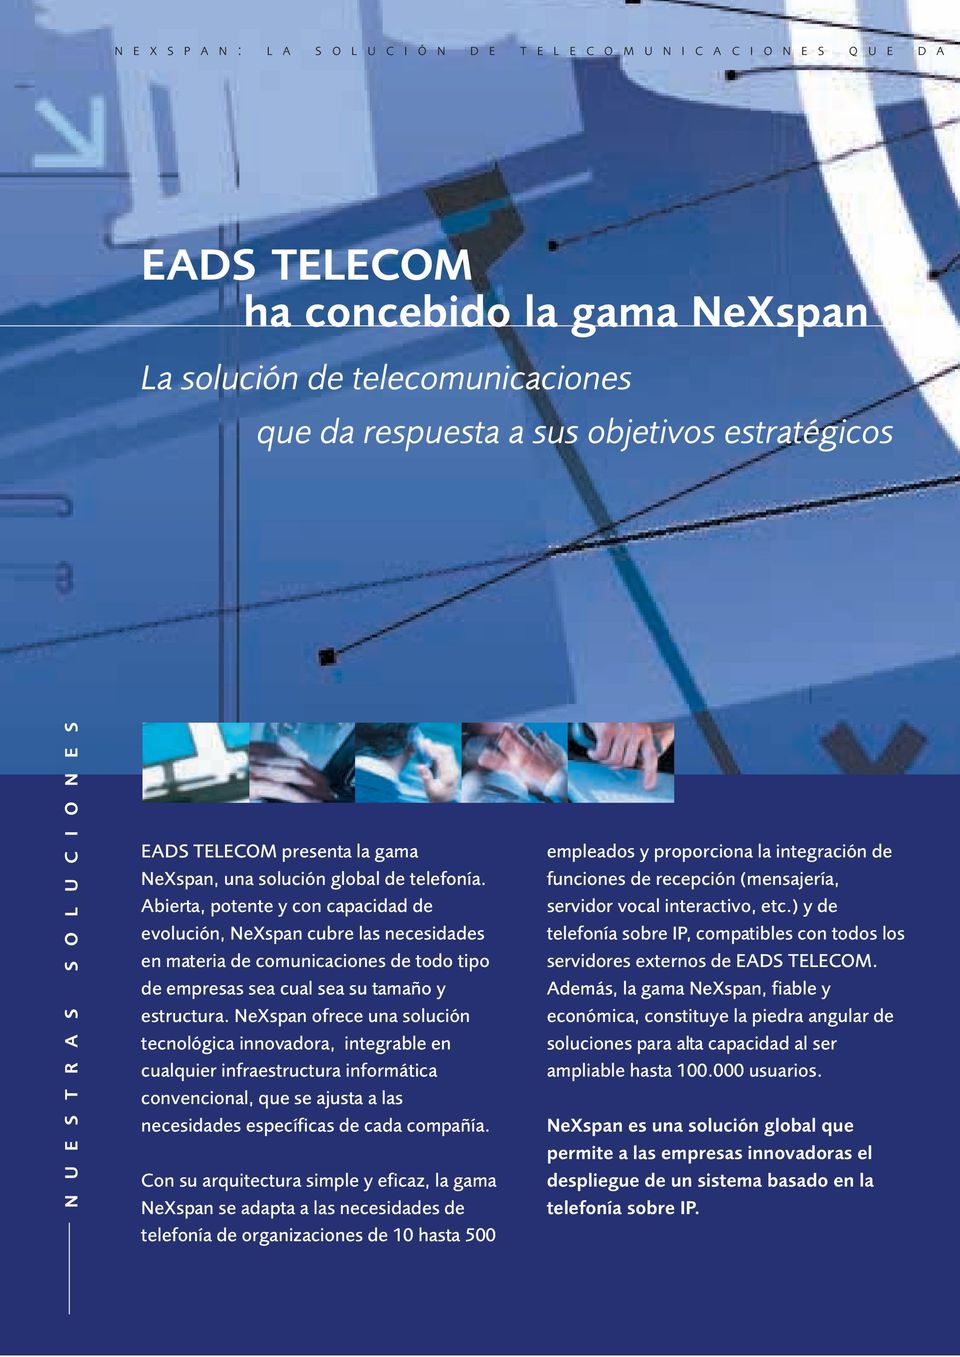 Abierta, potente y con capacidad de evolución, NeXspan cubre las necesidades en materia de comunicaciones de todo tipo de empresas sea cual sea su tamaño y estructura.